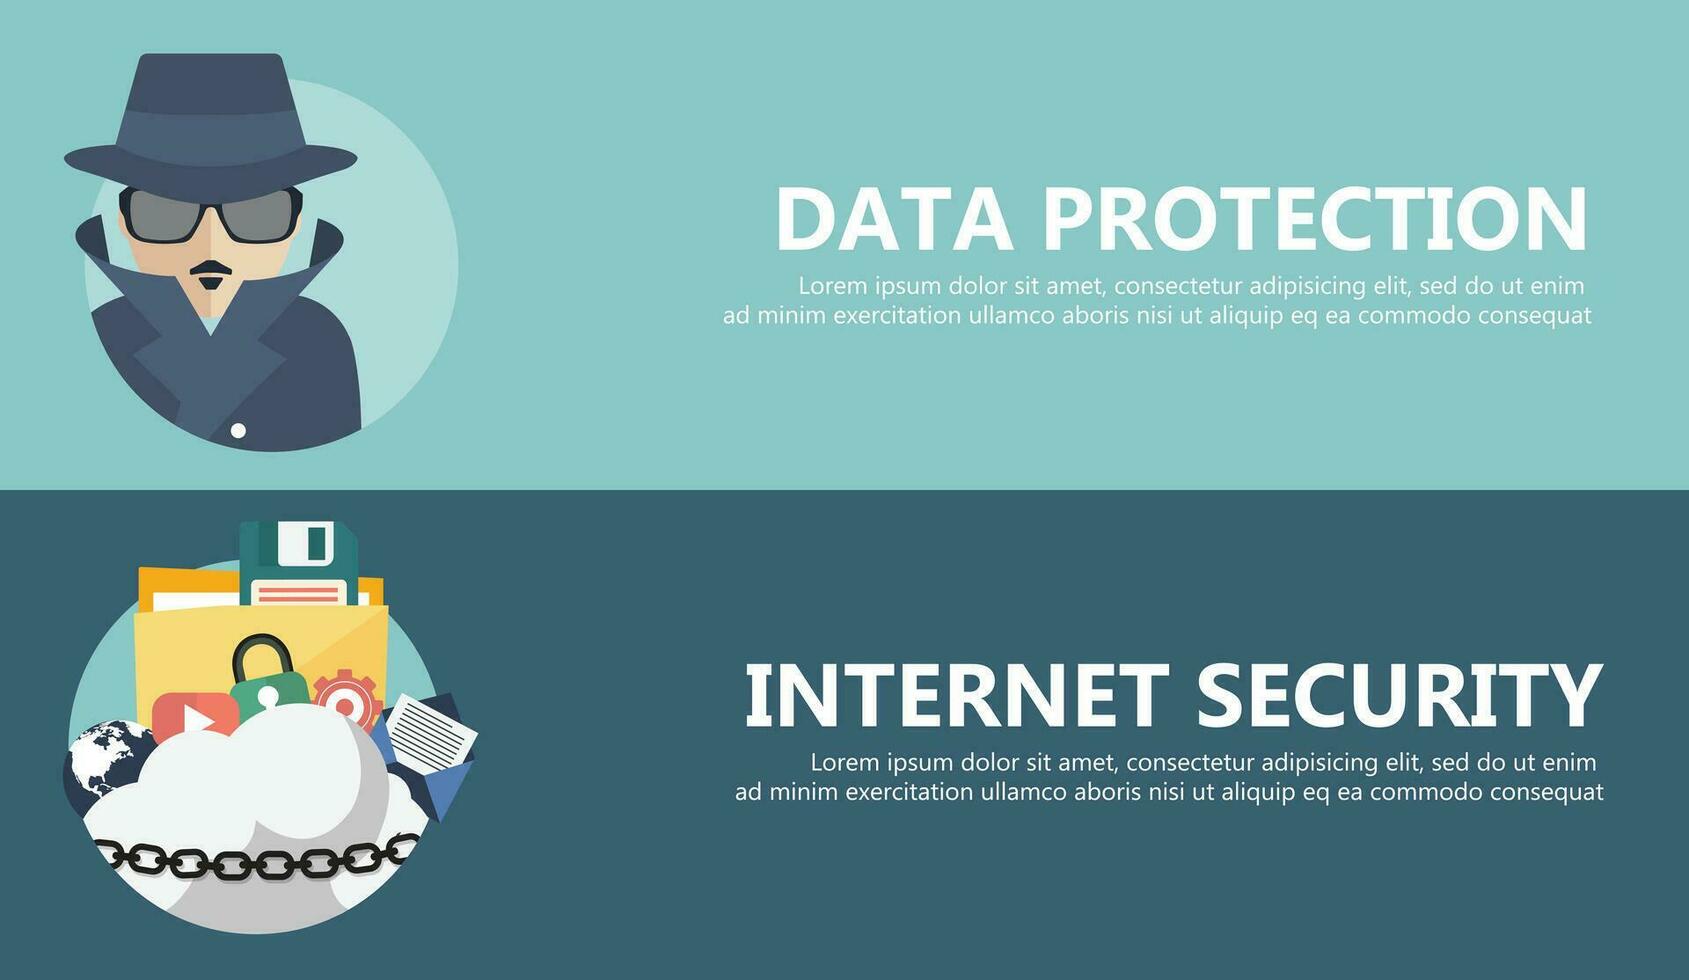 plano ilustración de seguridad centro. datos proteccion y Internet seguridad sitio web pancartas plano vector ilustración